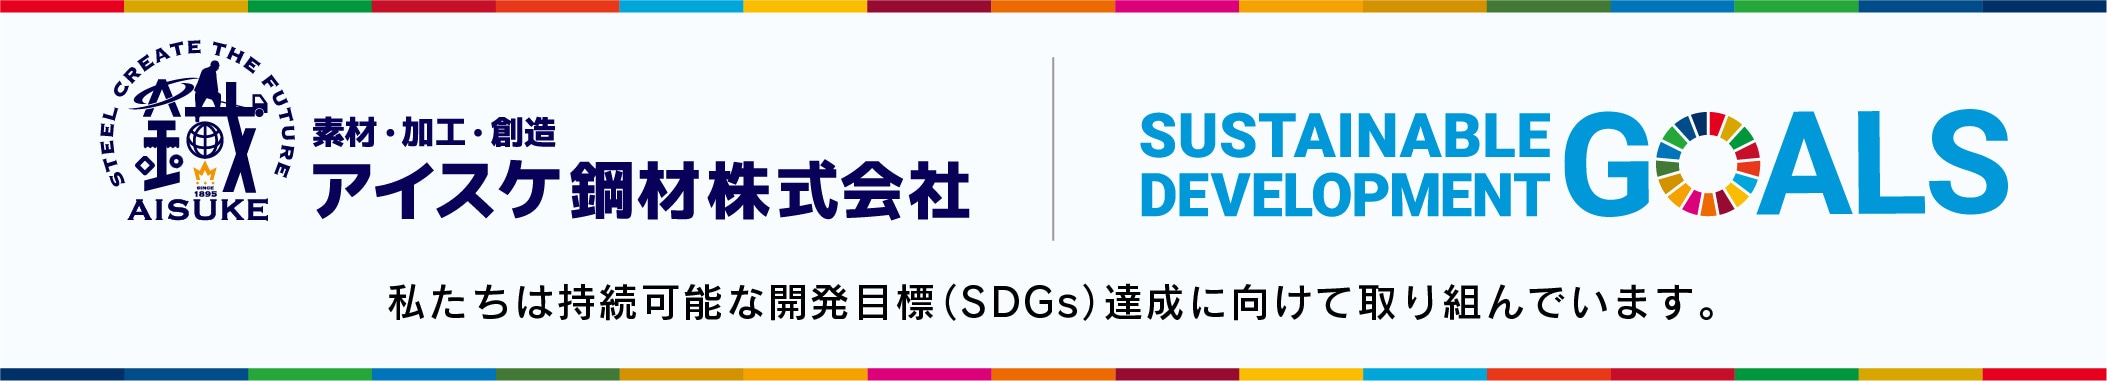 アイスケ鋼材株式会社 持続可能な開発目標（SDGs）達成への取り組み